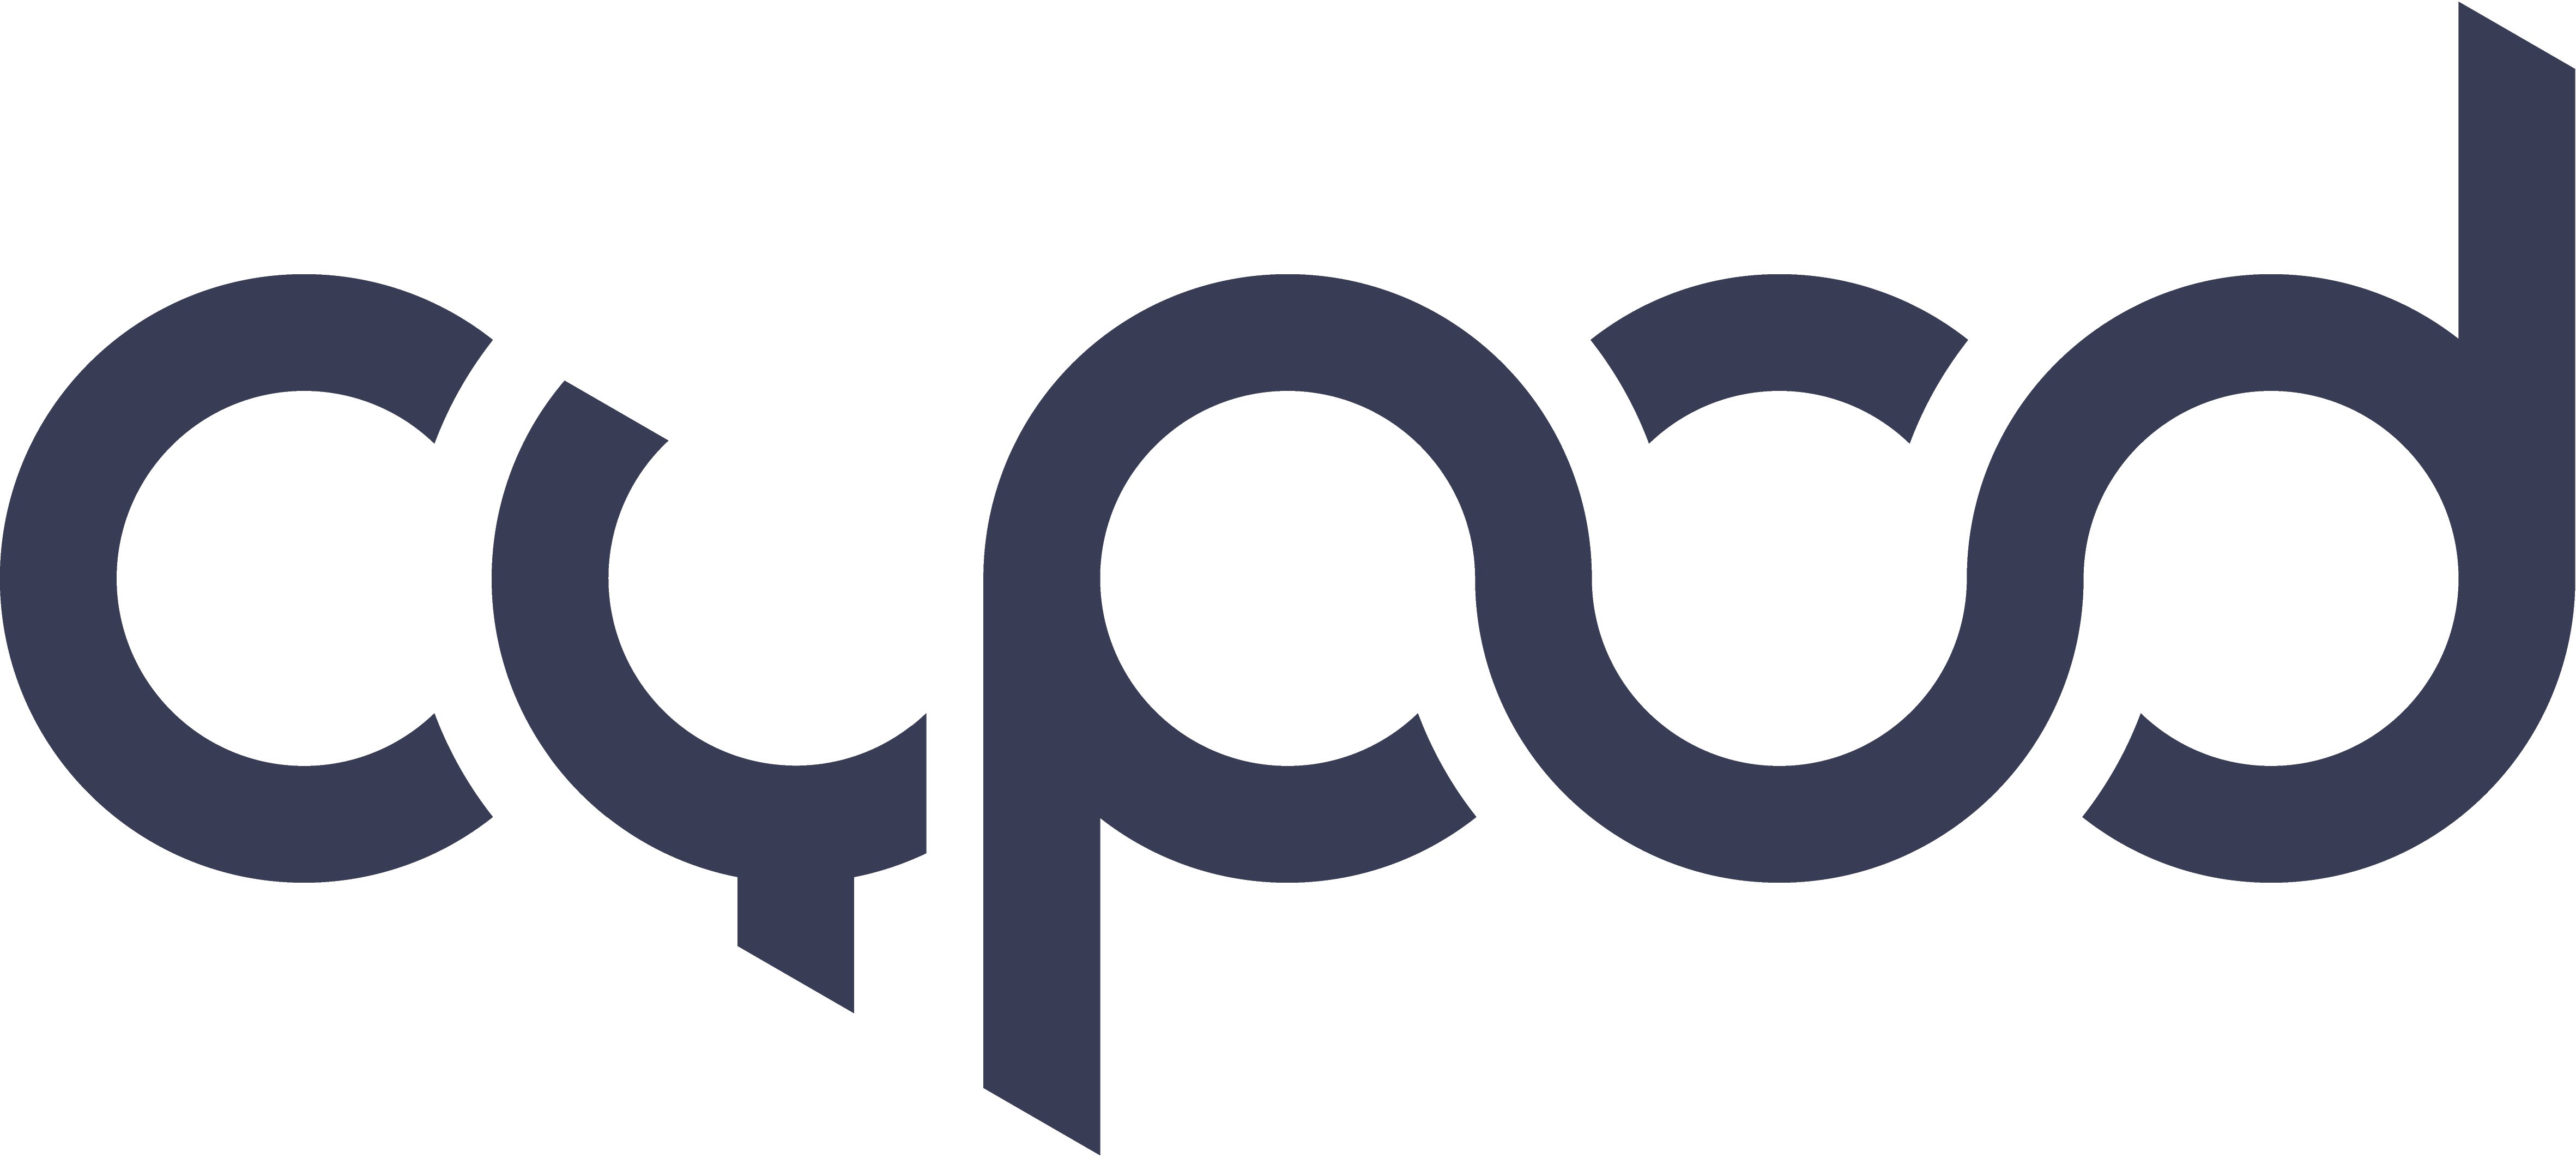 Cypod_logo4-01-1